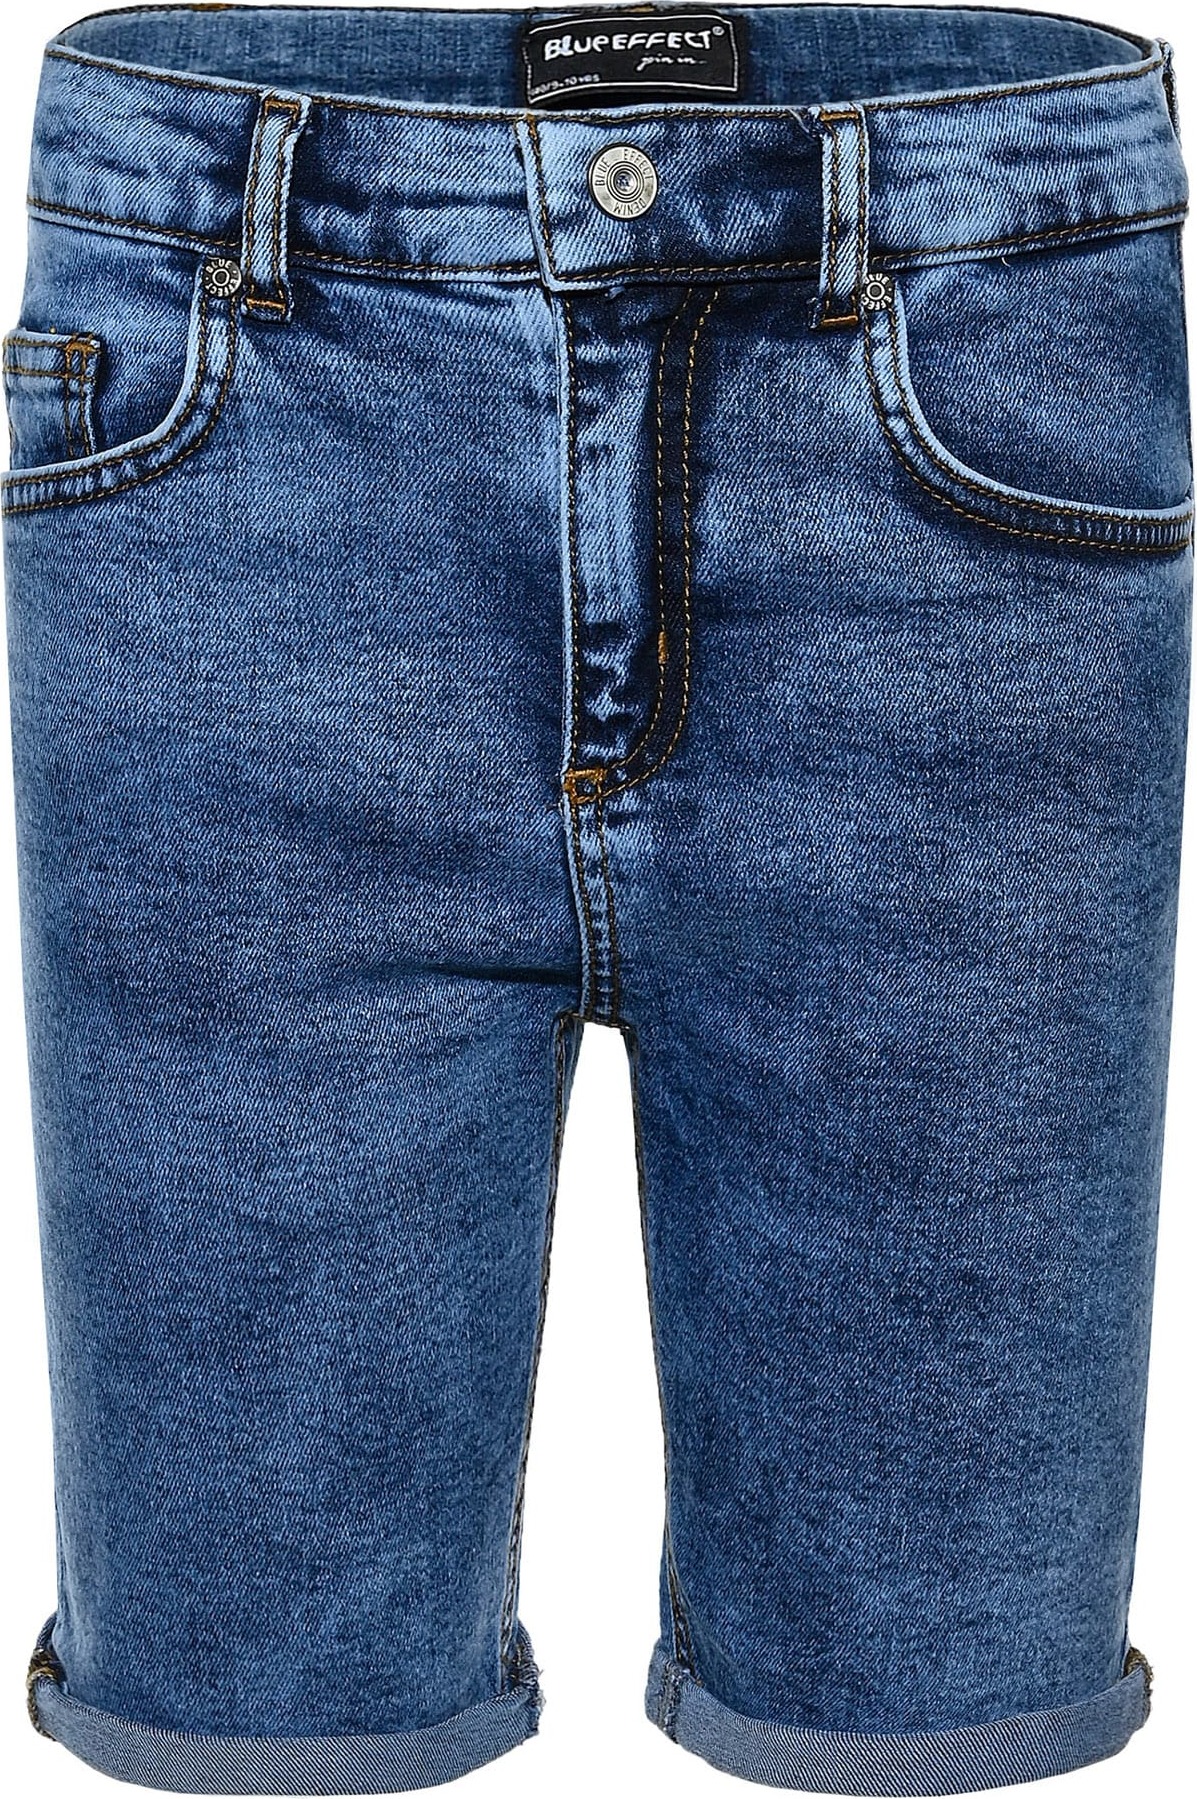 BLUE EFFECT Jeans modrá džínovina